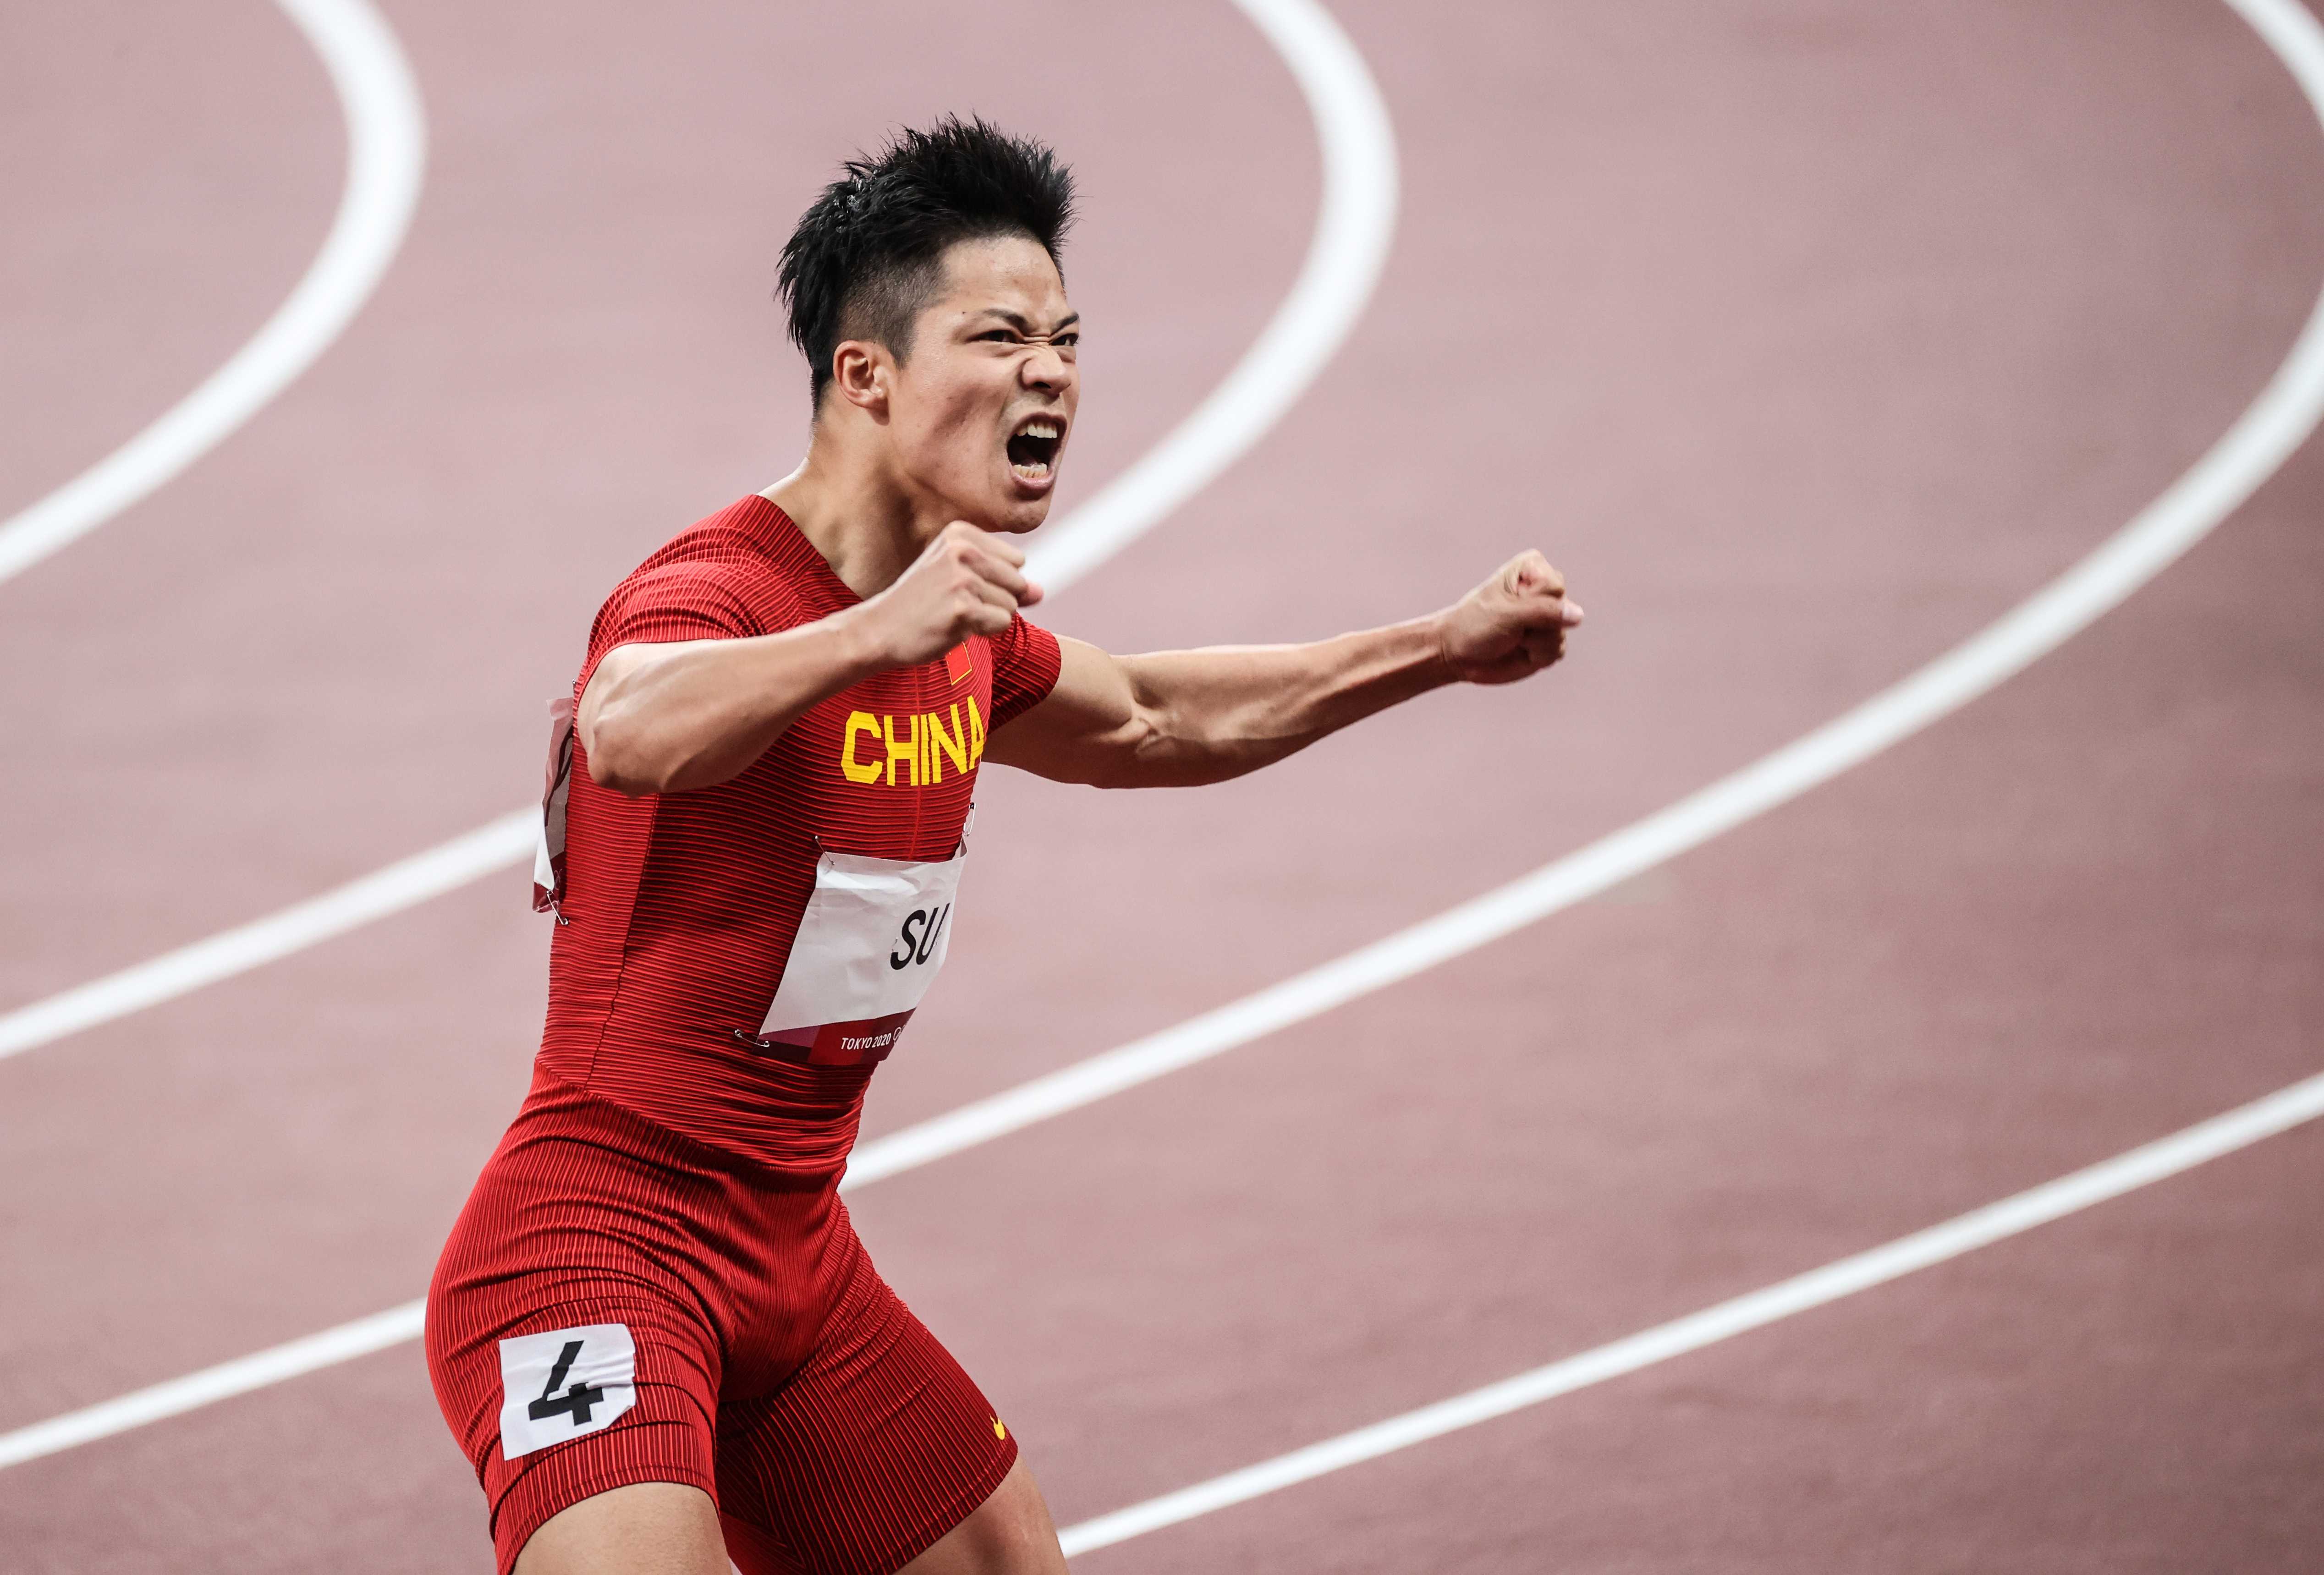 致敬中国速度苏炳添东京奥运田径男子100米获第6创造历史